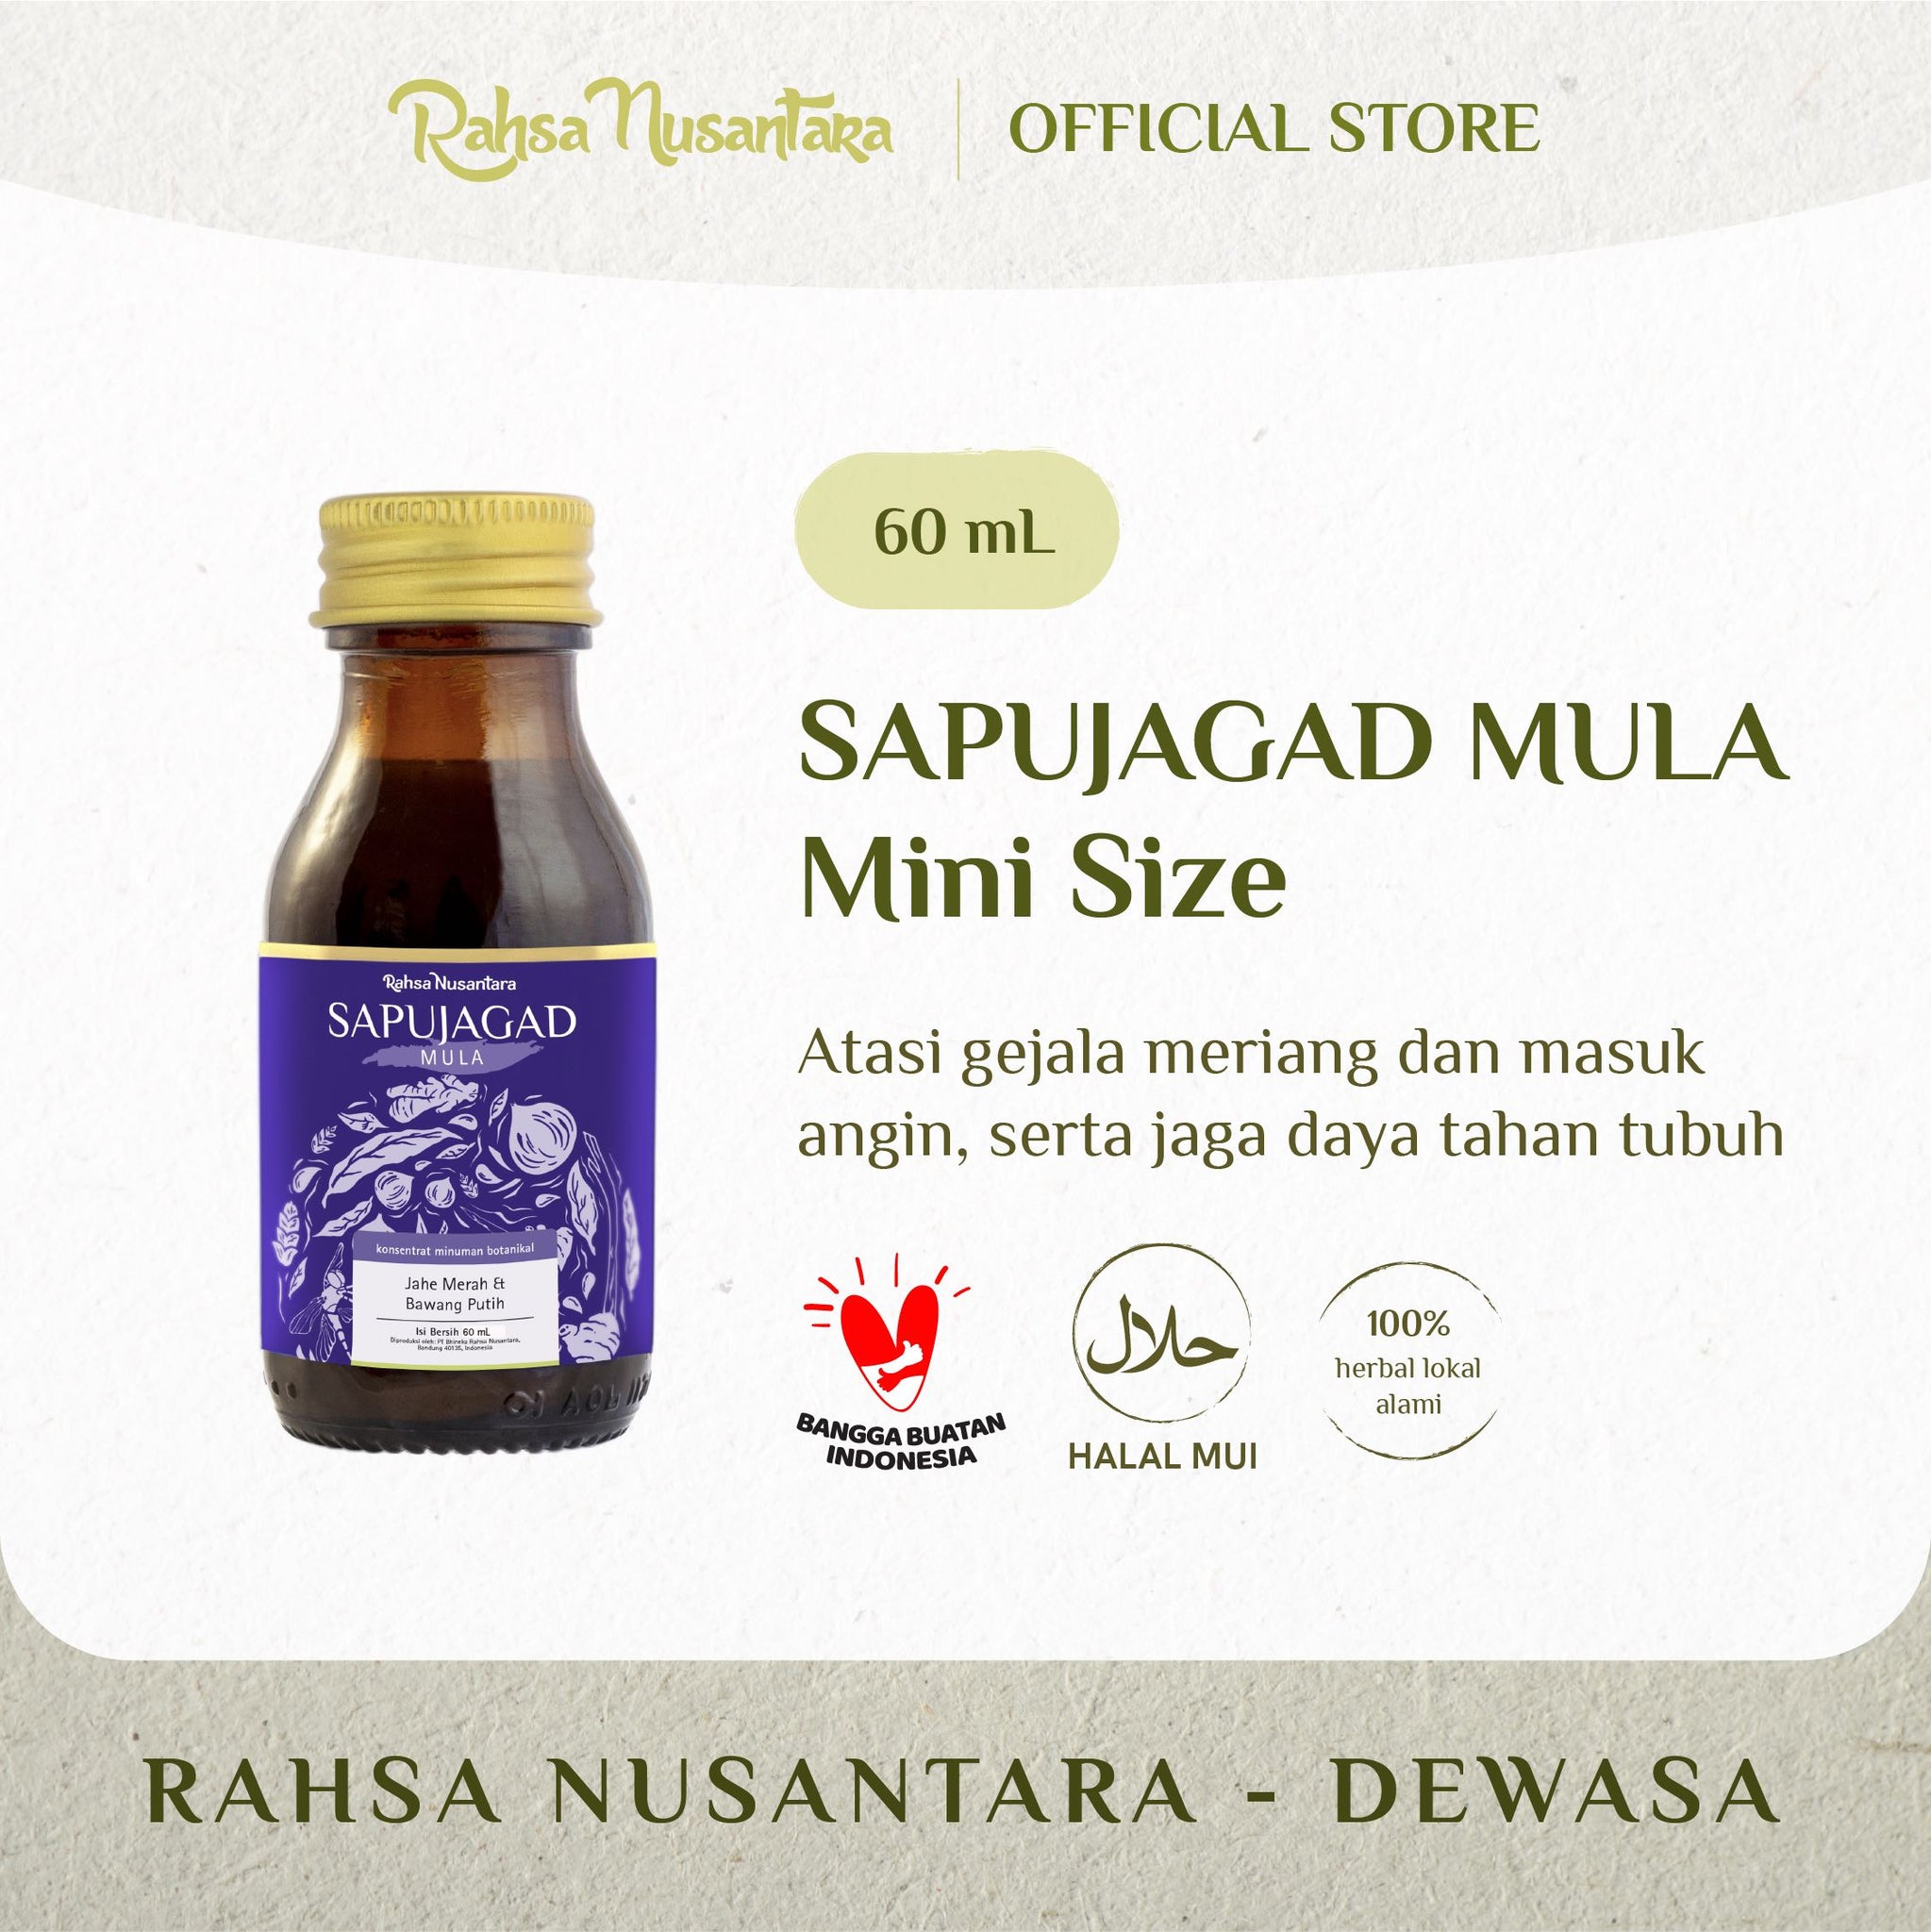 Paket Lengkap Jagad Series Mini Size | Gratis 1 Sadajiwa By Rahsa Nusantara